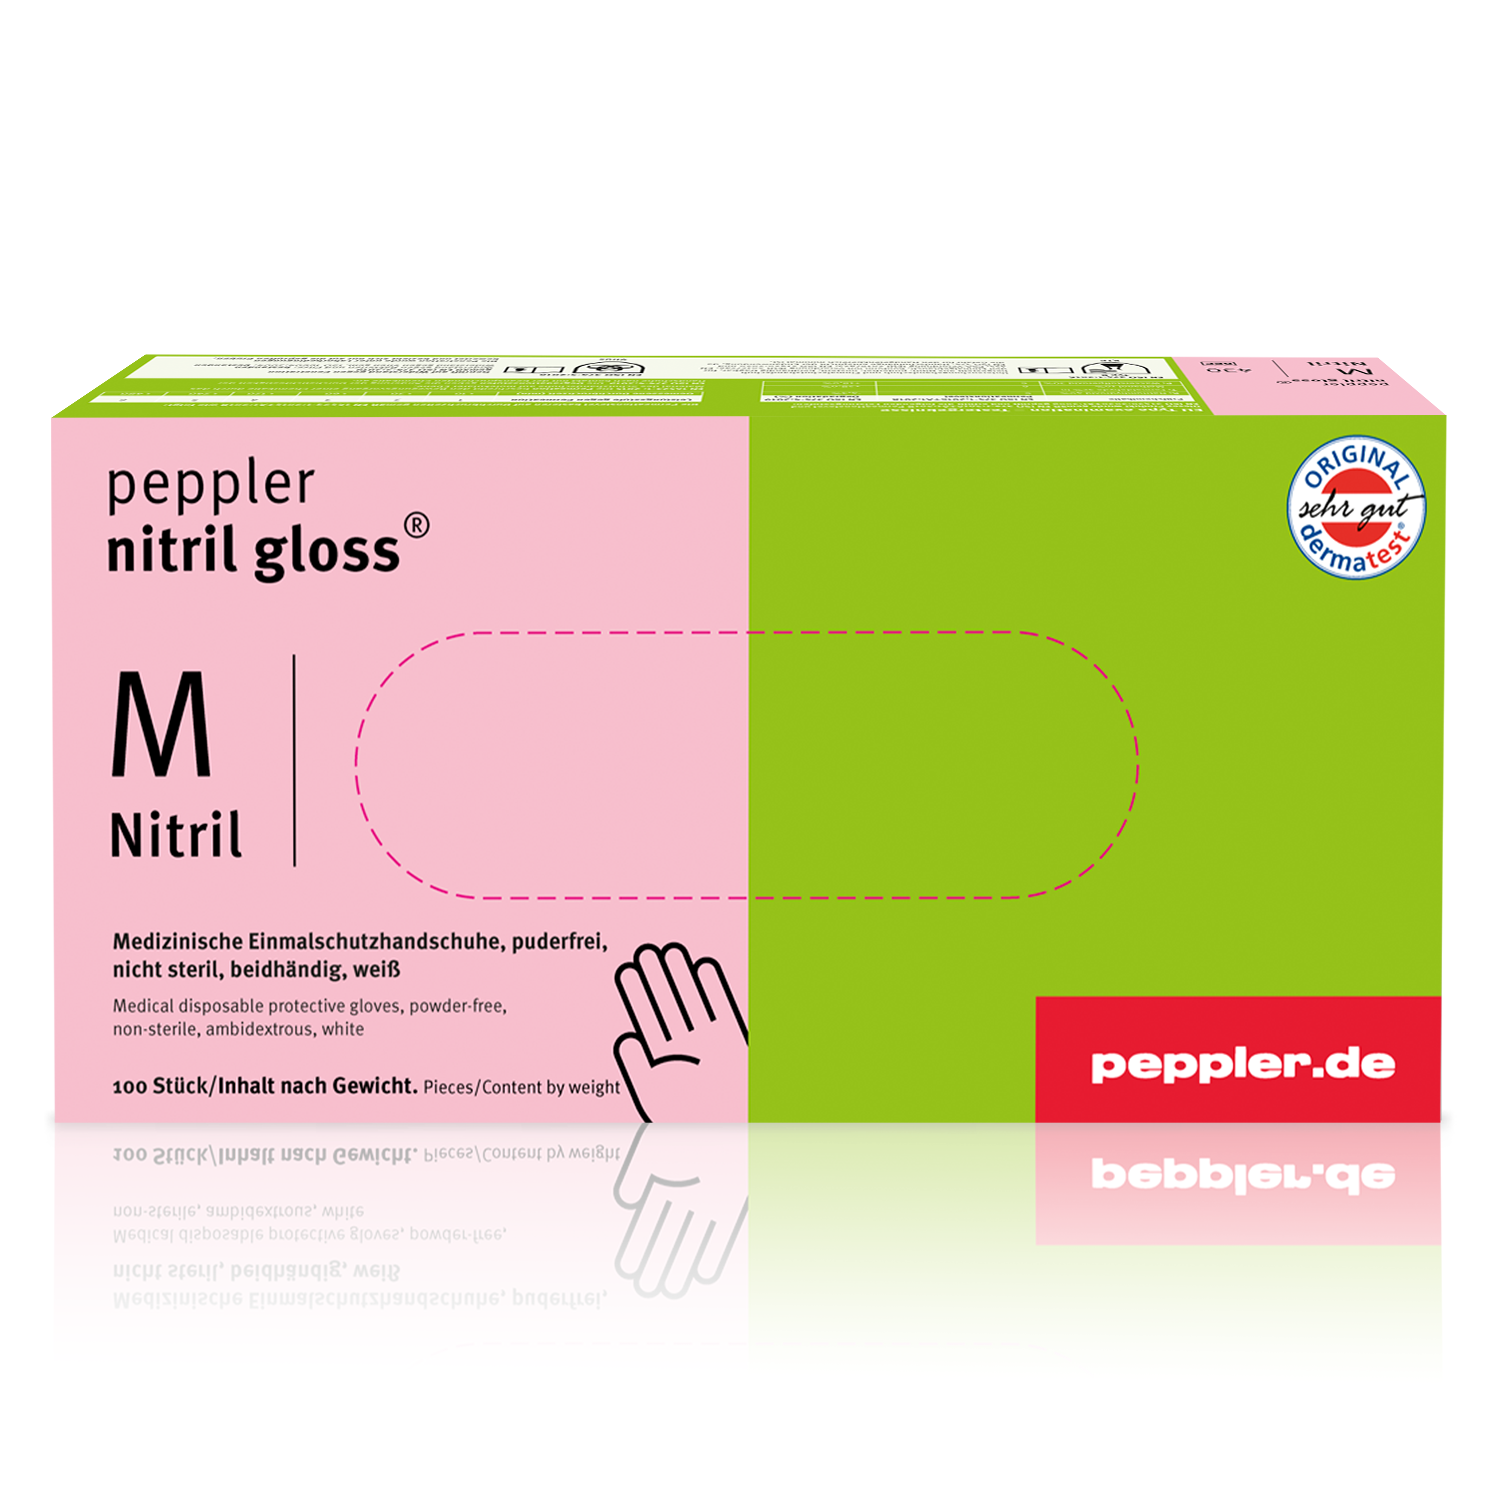 peppler nitril gloss® | Nitrilhandschuh